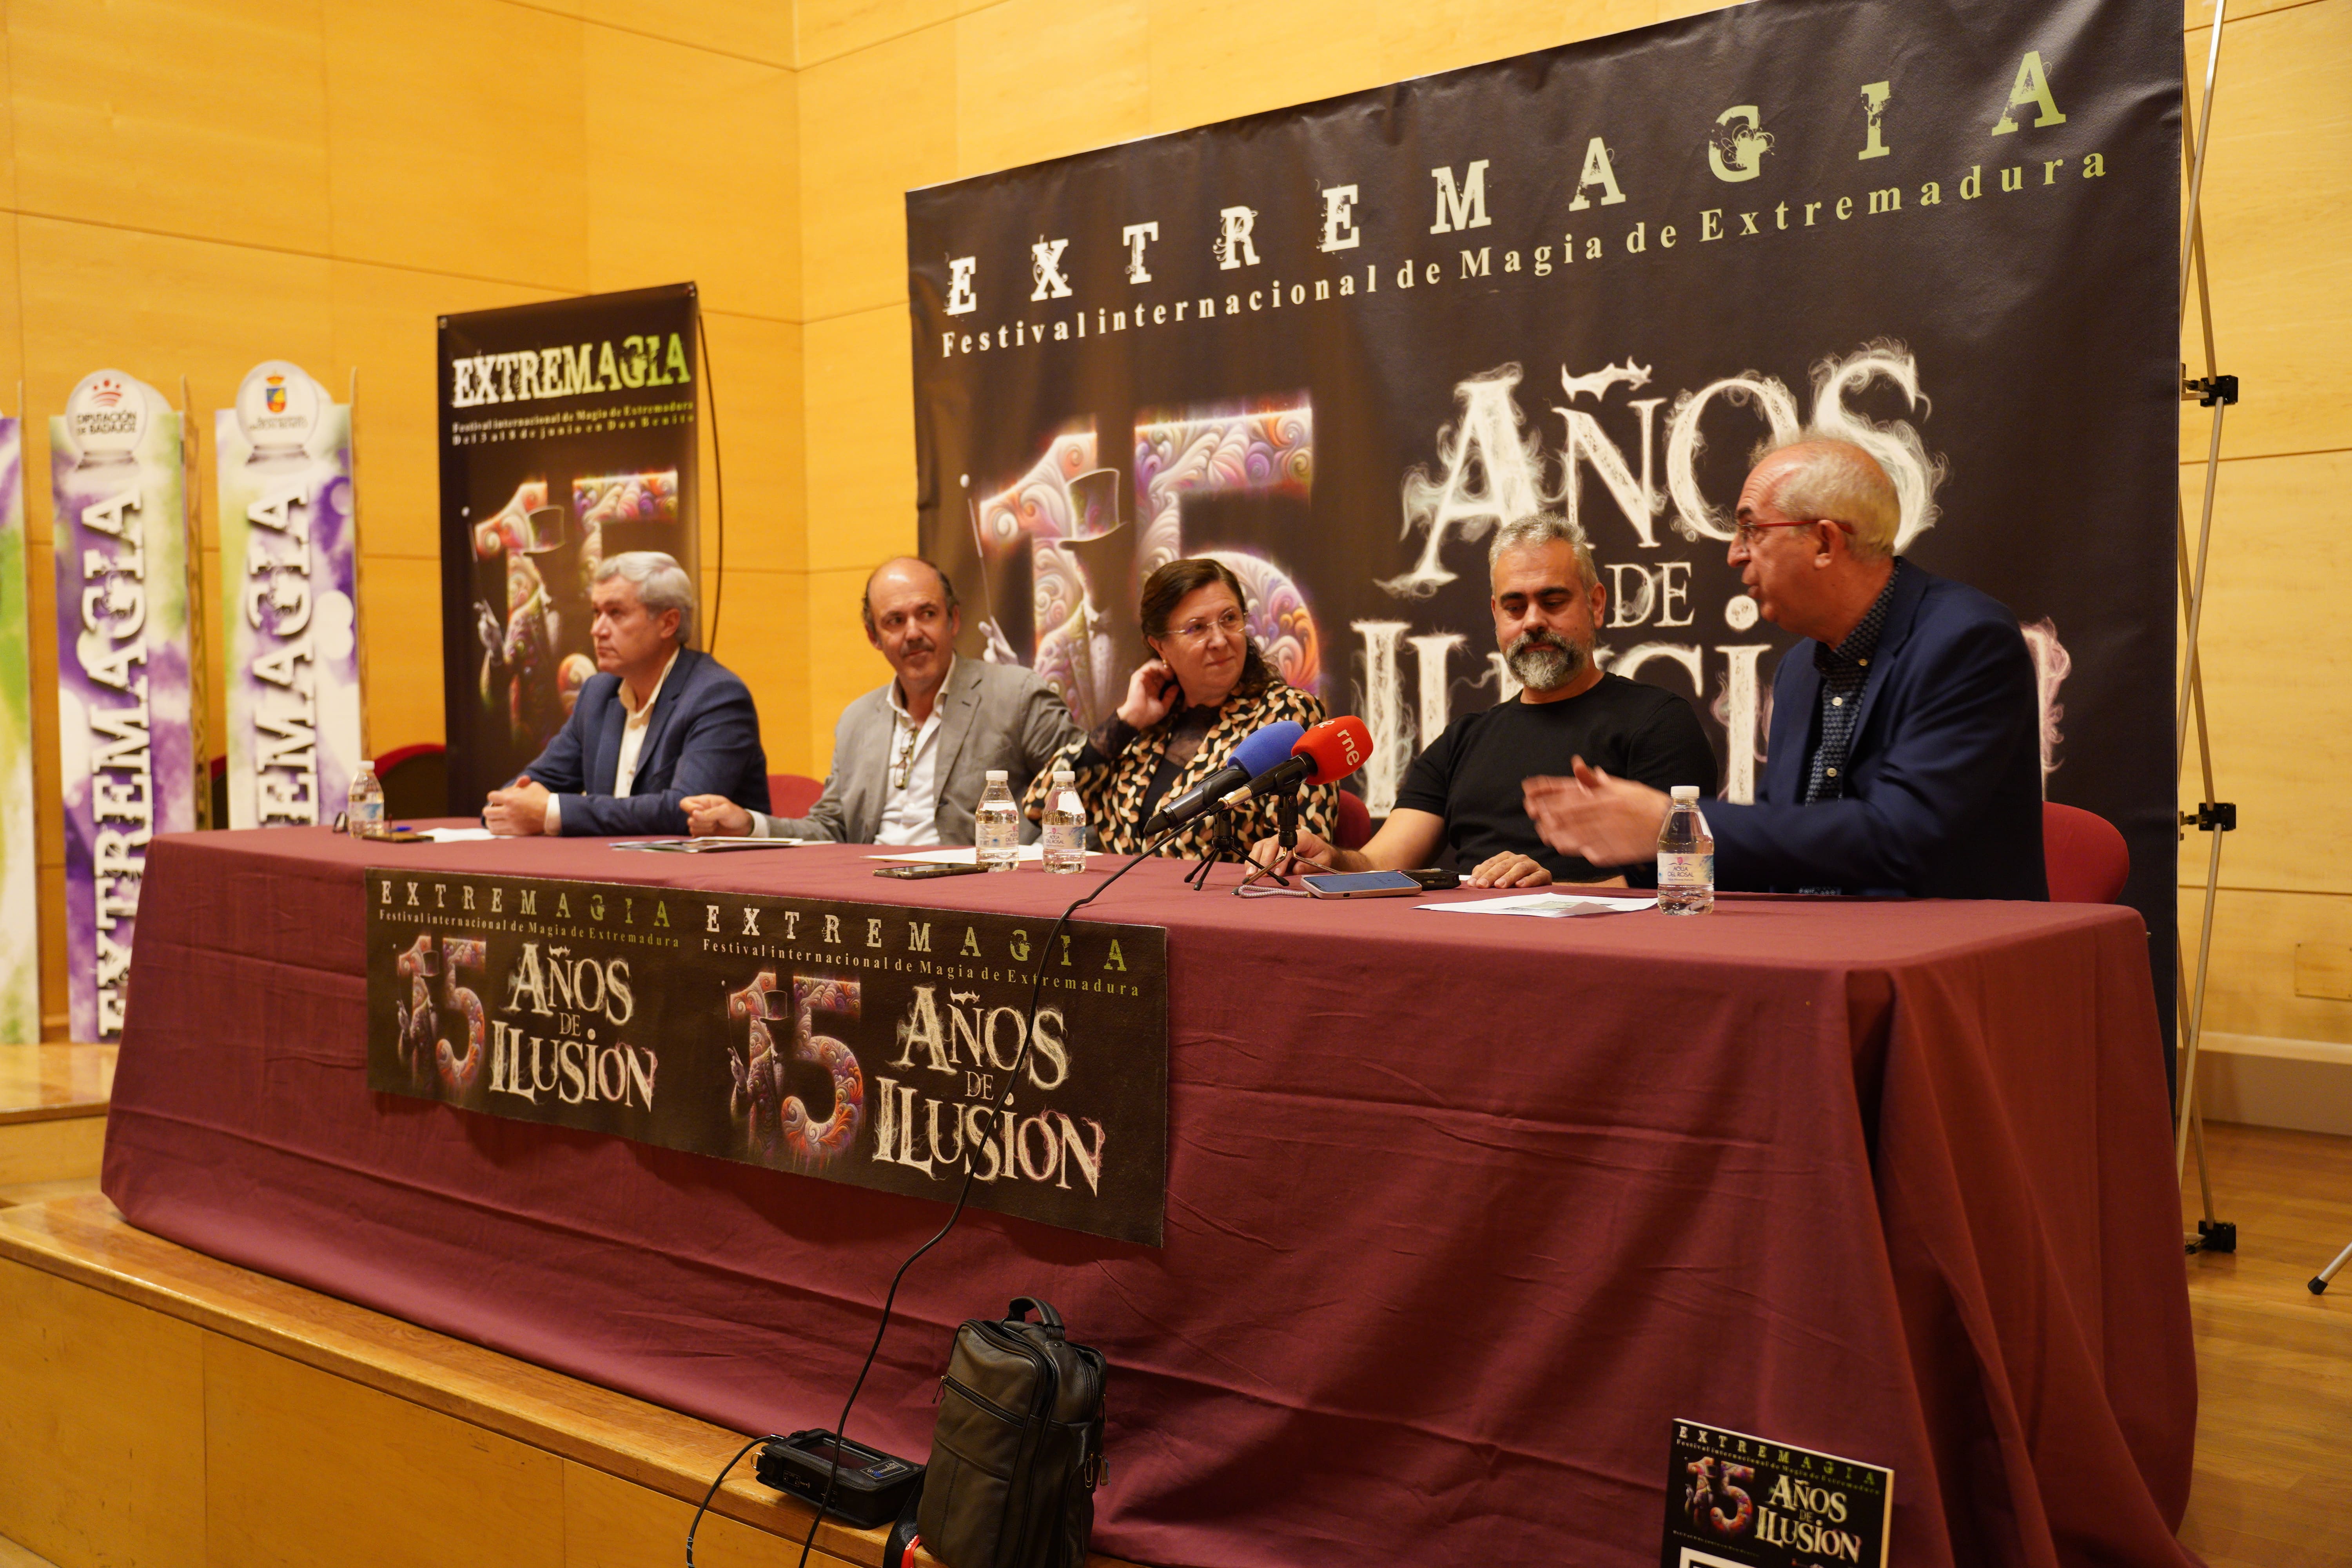 Image 1 of article El XV Festival Internacional de Magia de Extremadura programa más de 40 espectáculos del 3 al 8 de junio en Don Benito